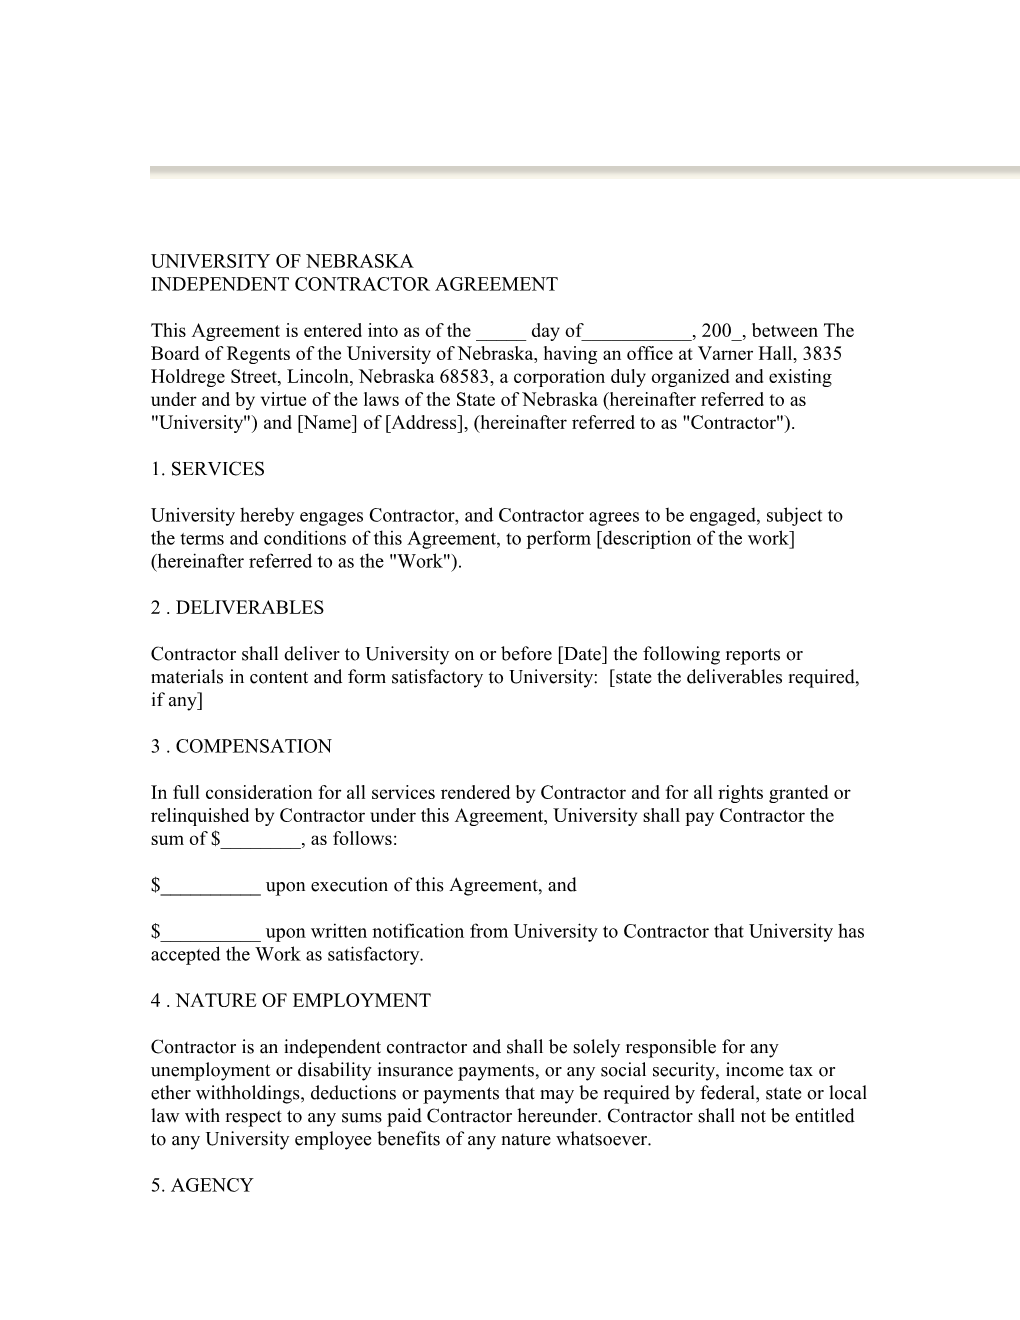 University of Nebraska Independent Contractor Agreement